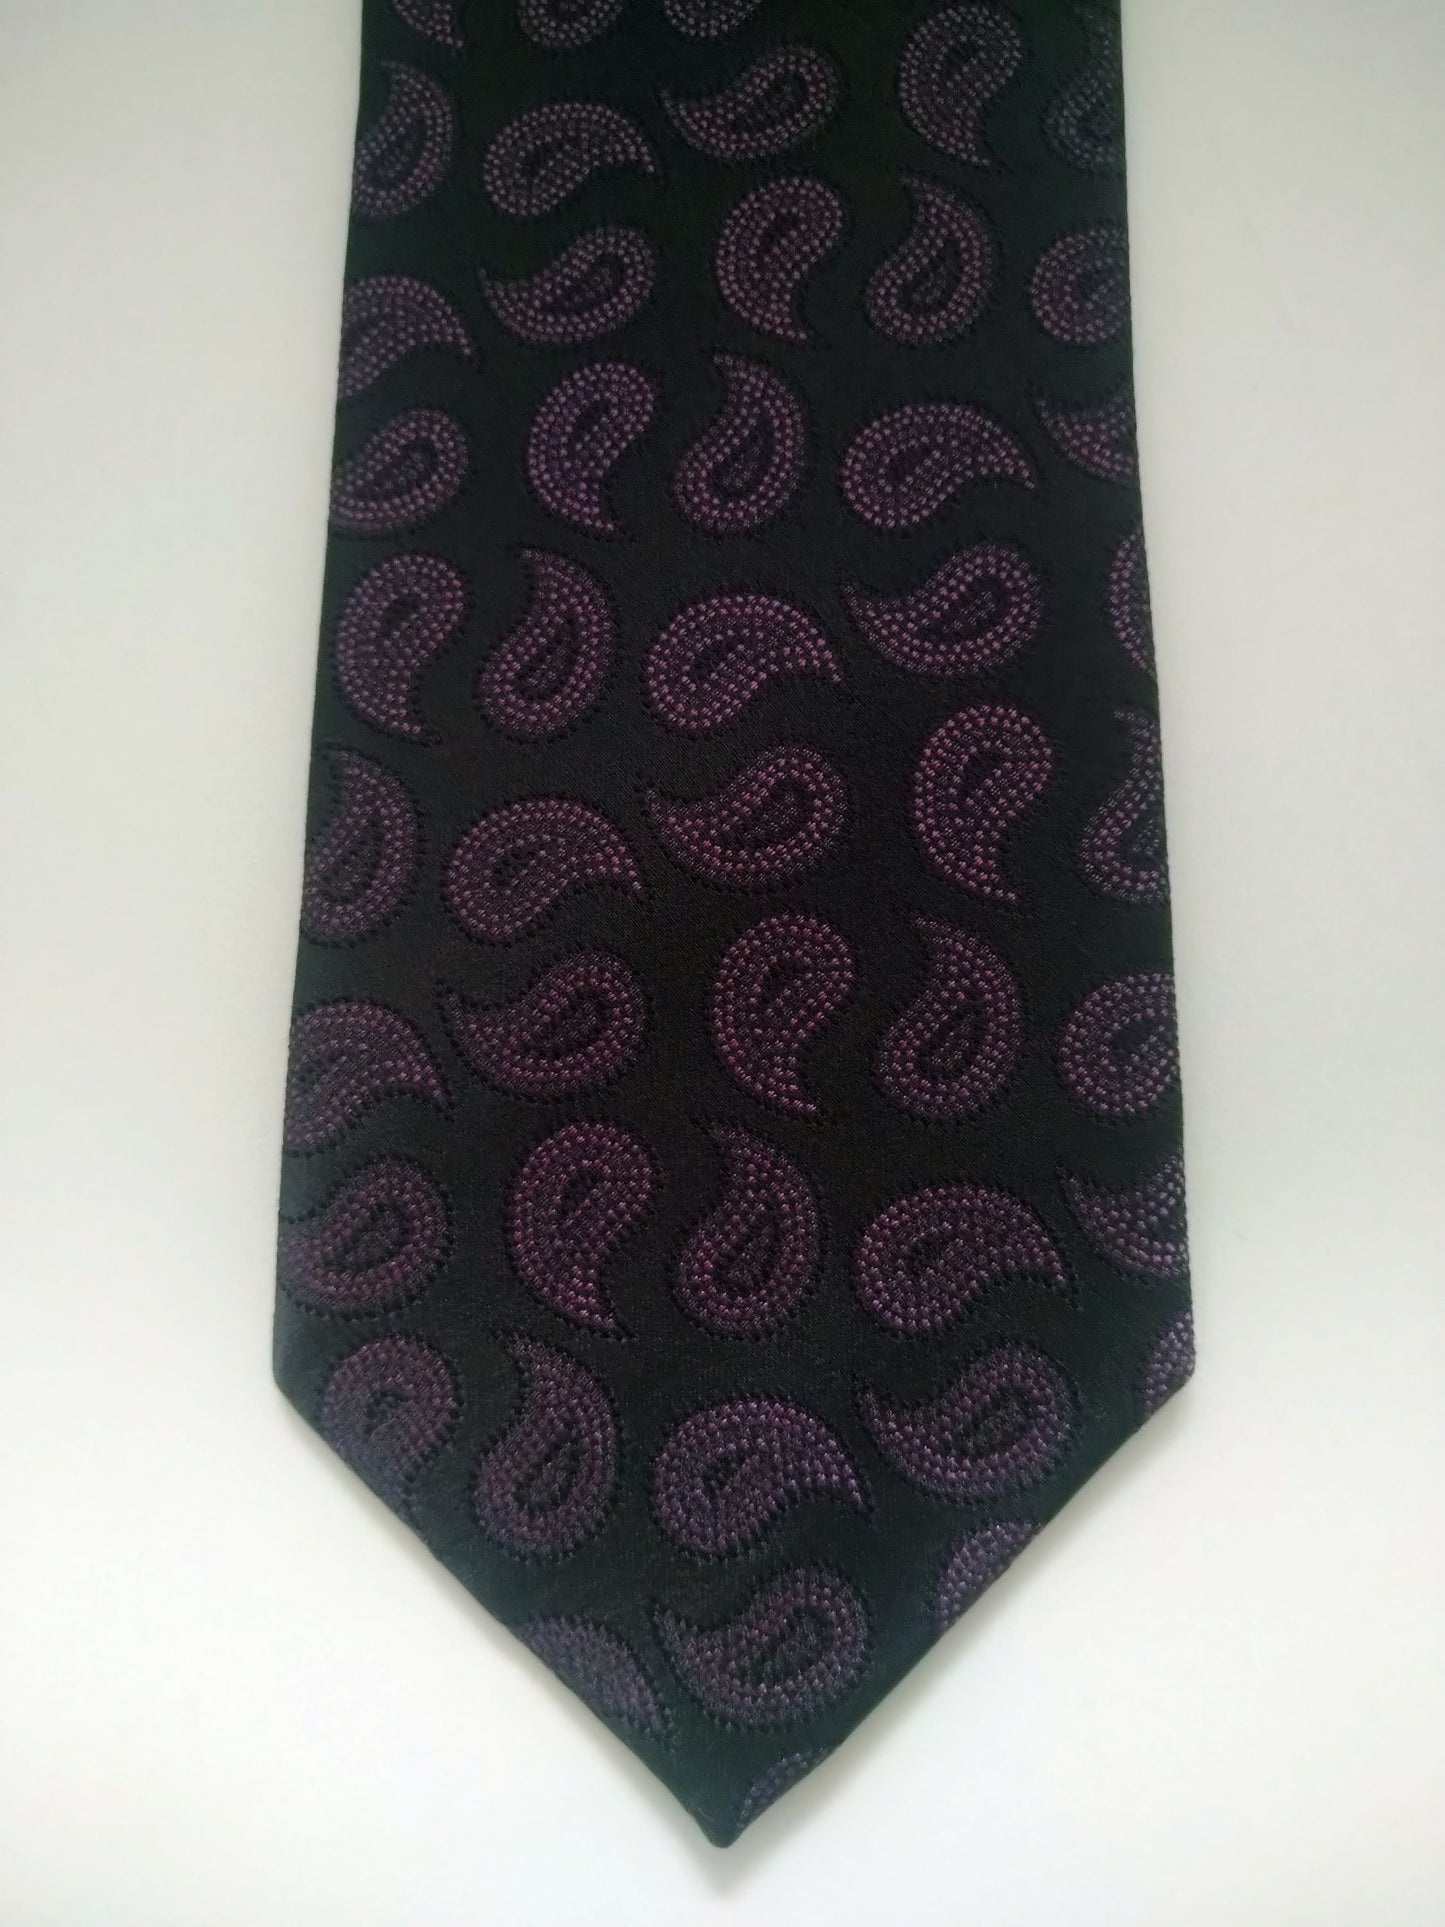 Cravate Vintage. Motif violet noir. Soie